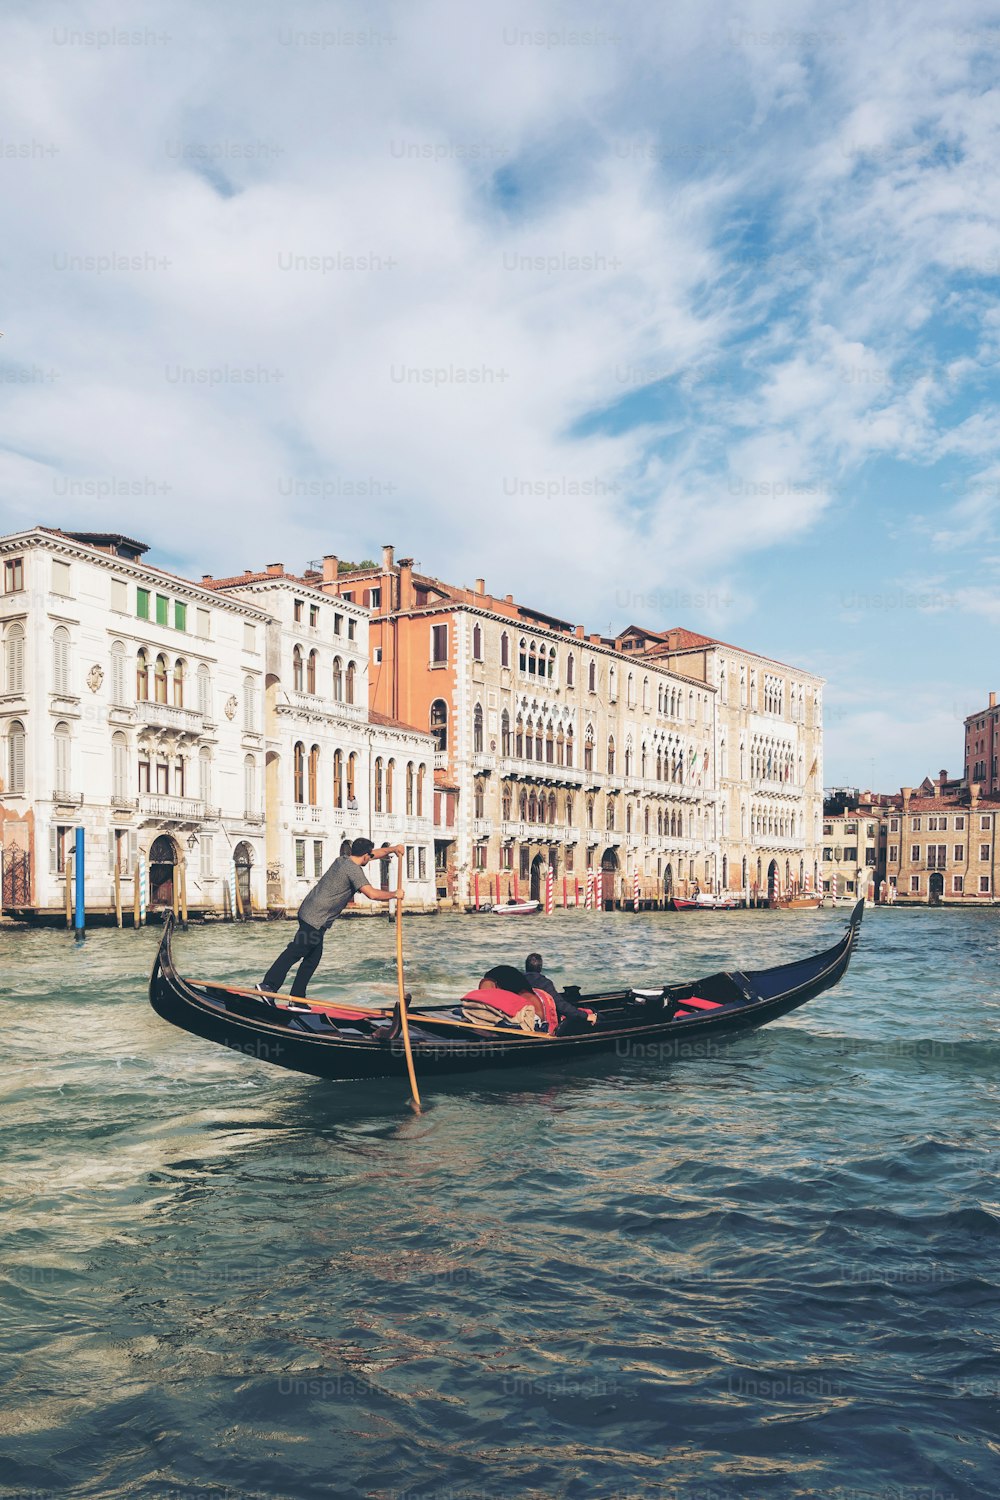 Góndolero veneciano que batea góndola a través del gran canal de Venecia, Italia. La góndola es un bote de remos veneciano tradicional de fondo plano. Es el único medio de transporte de Venecia, Italia.